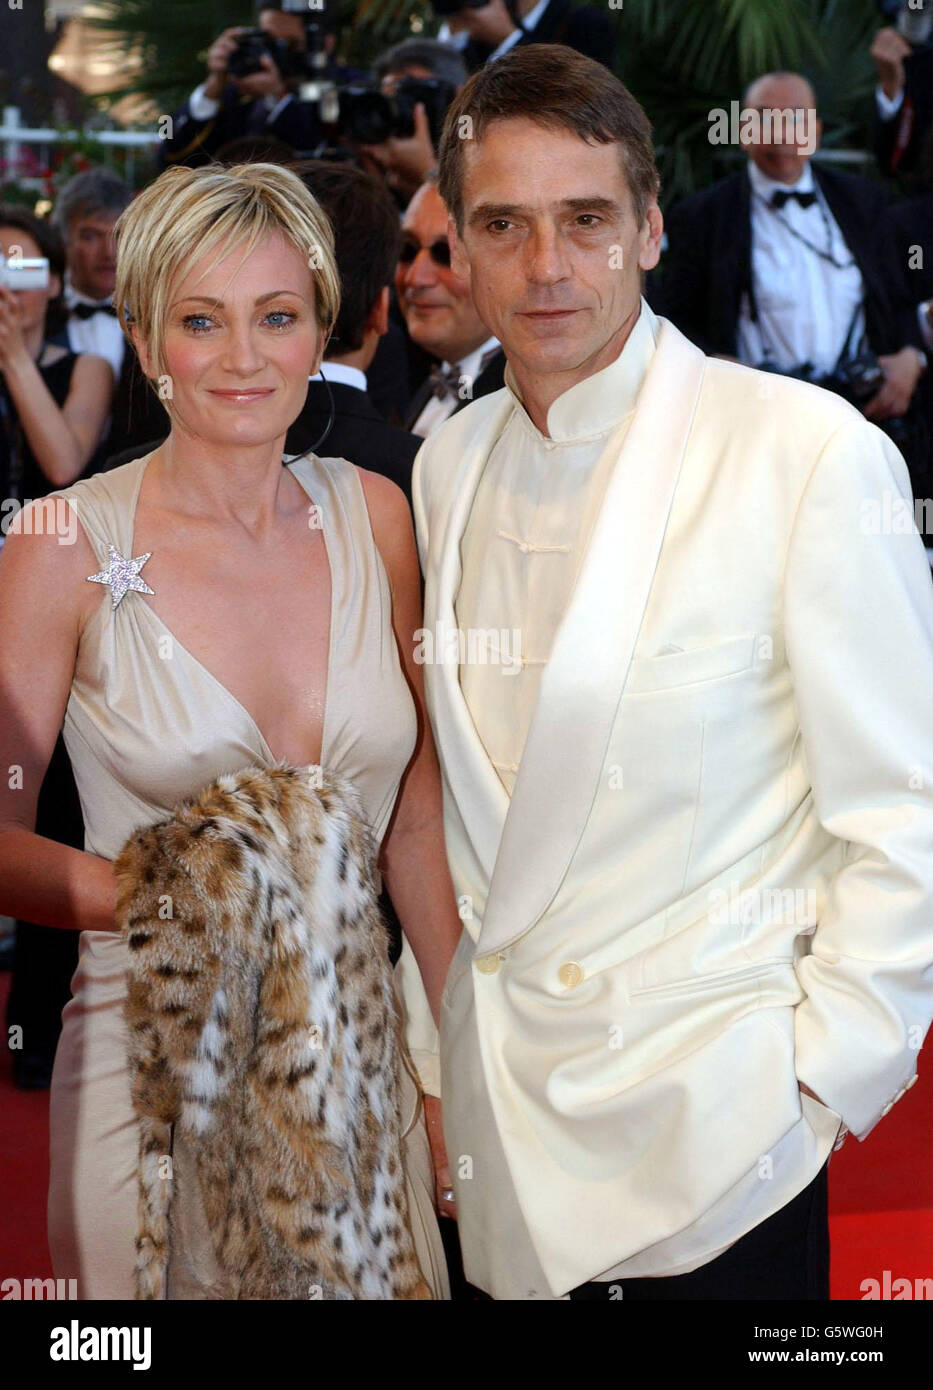 L'attore britannico Jeremy Irons e la cantante e attrice francese Patricia Kaas arrivano al Palais des Festival per la cerimonia di chiusura del 55° Festival di Cannes. Foto Stock